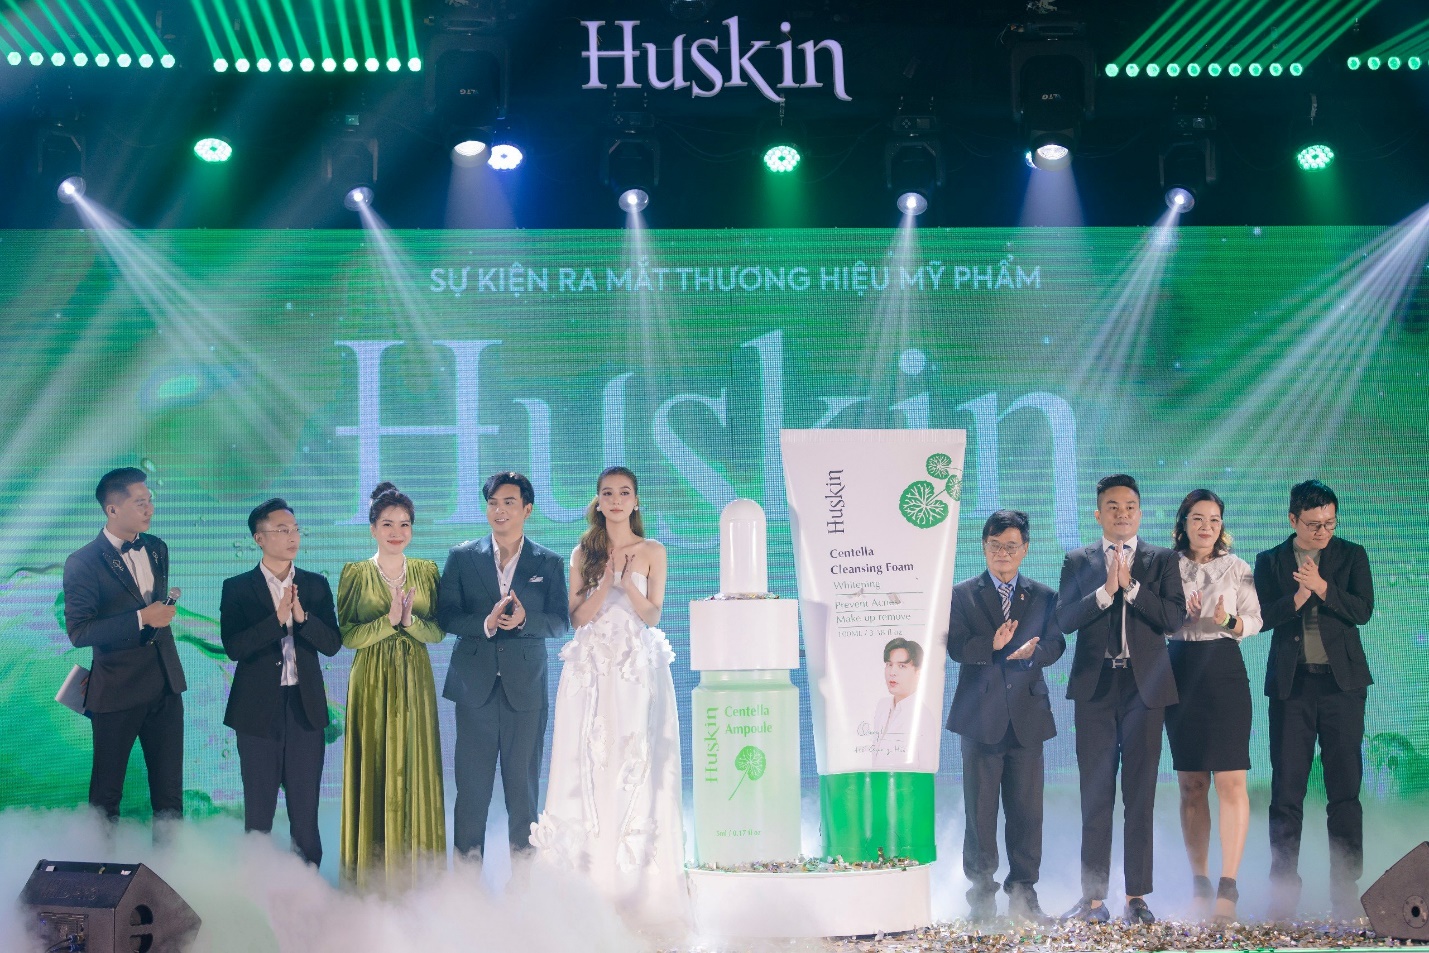 Hồ Quang Hiếu, Tuệ Như lên chức chủ tịch công ty mỹ phẩm Huskin - 4